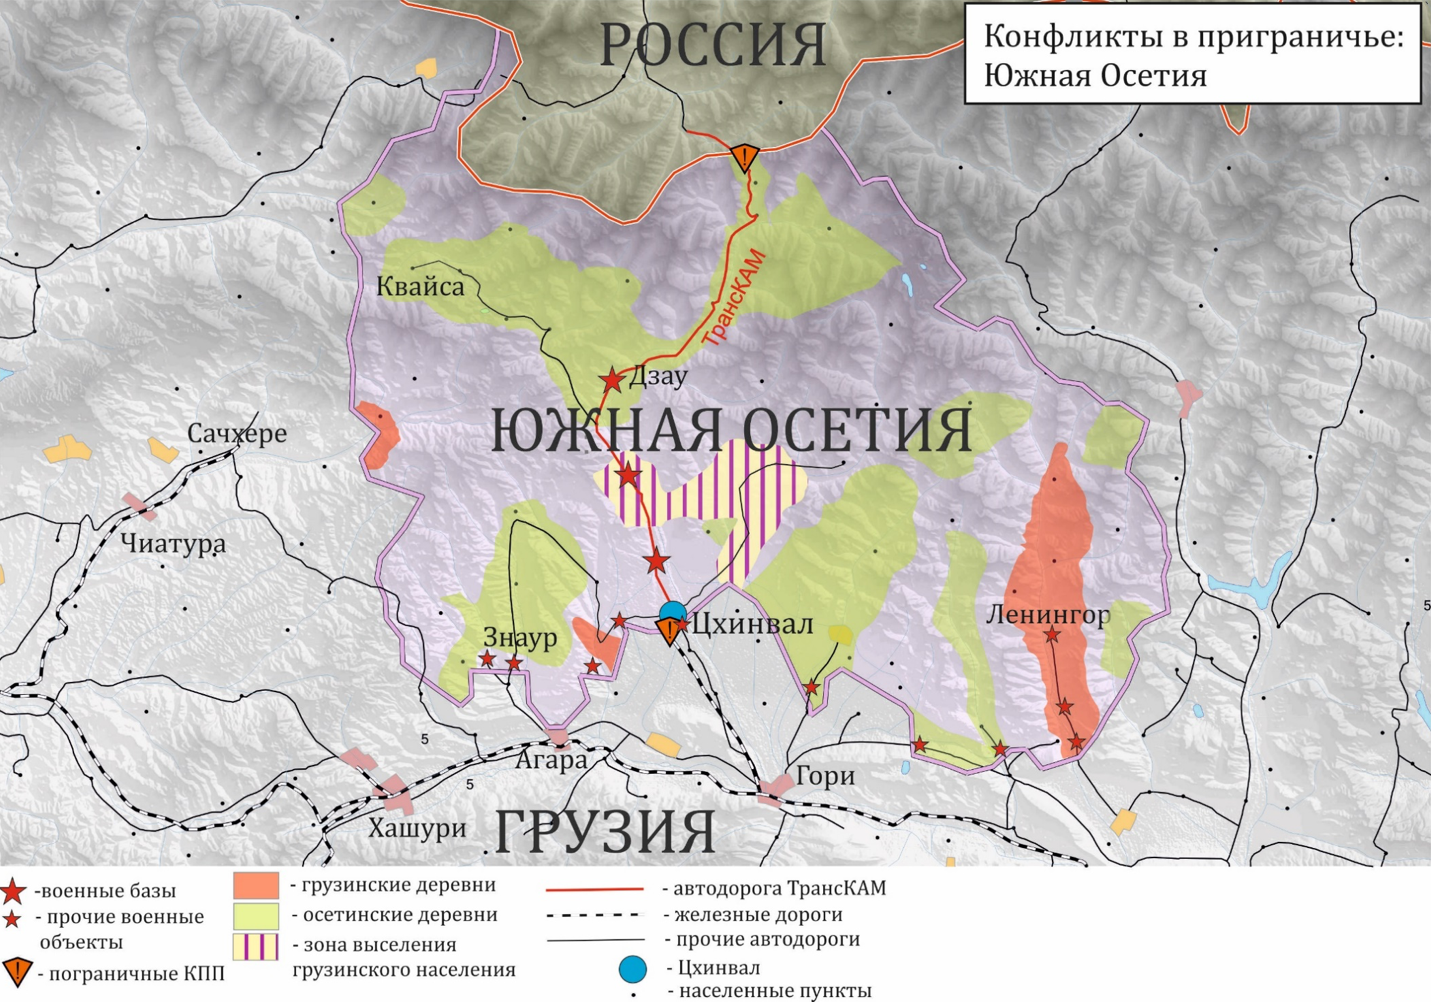 Конфликты в приграничье: Южная Осетия